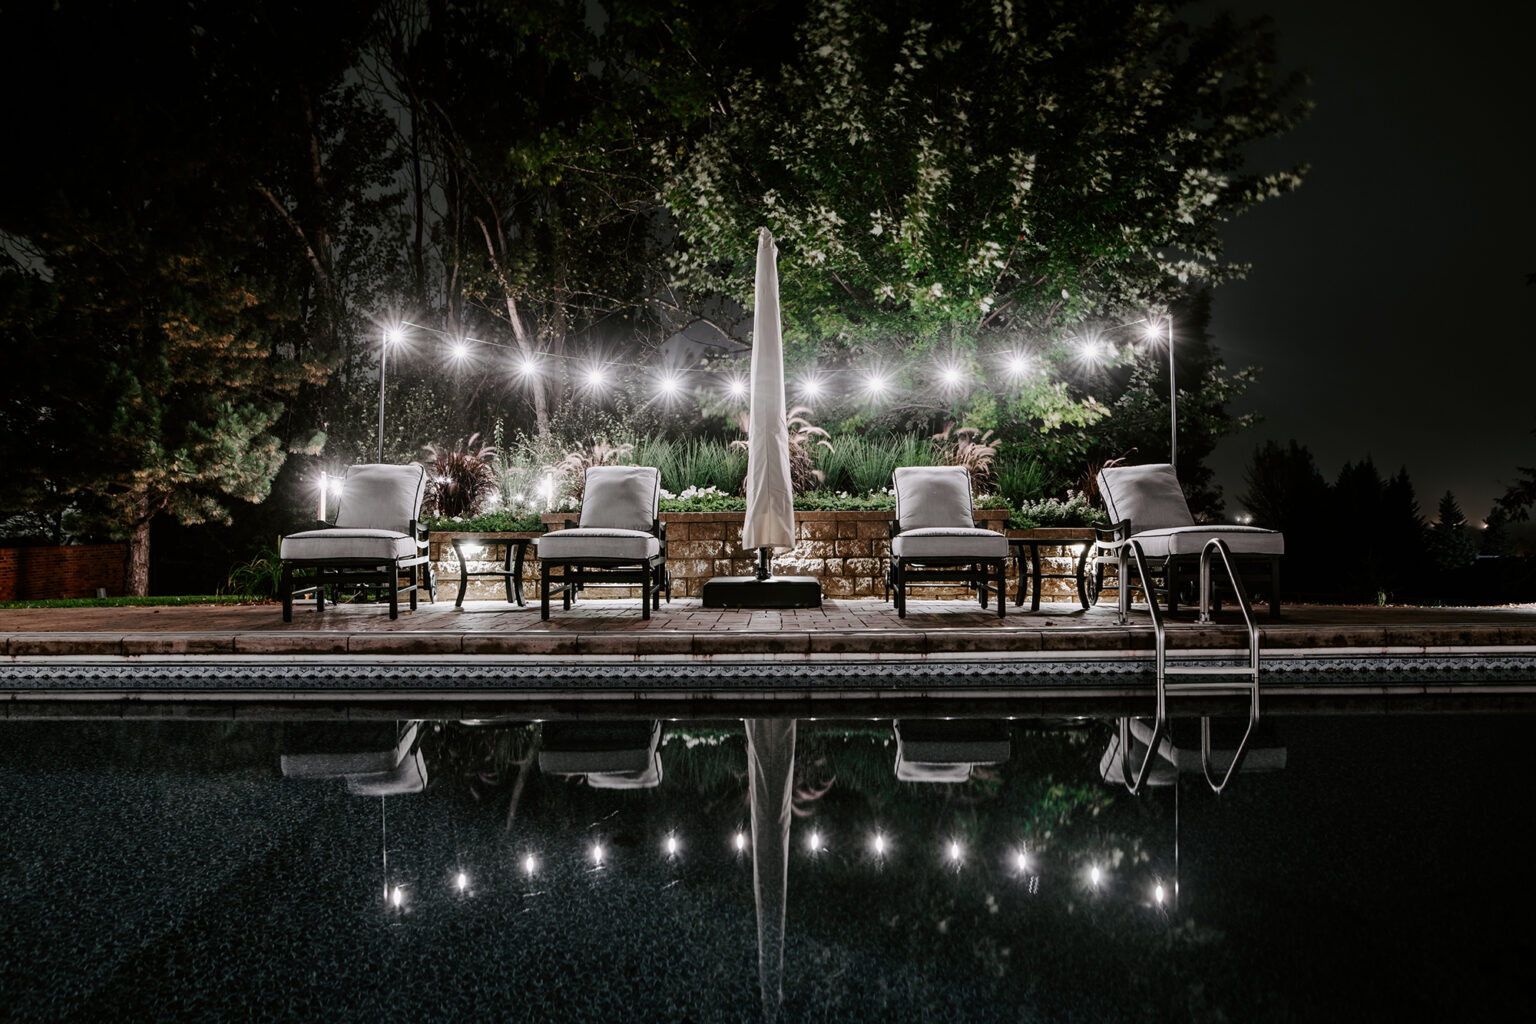 nighttime lights over backyard pool